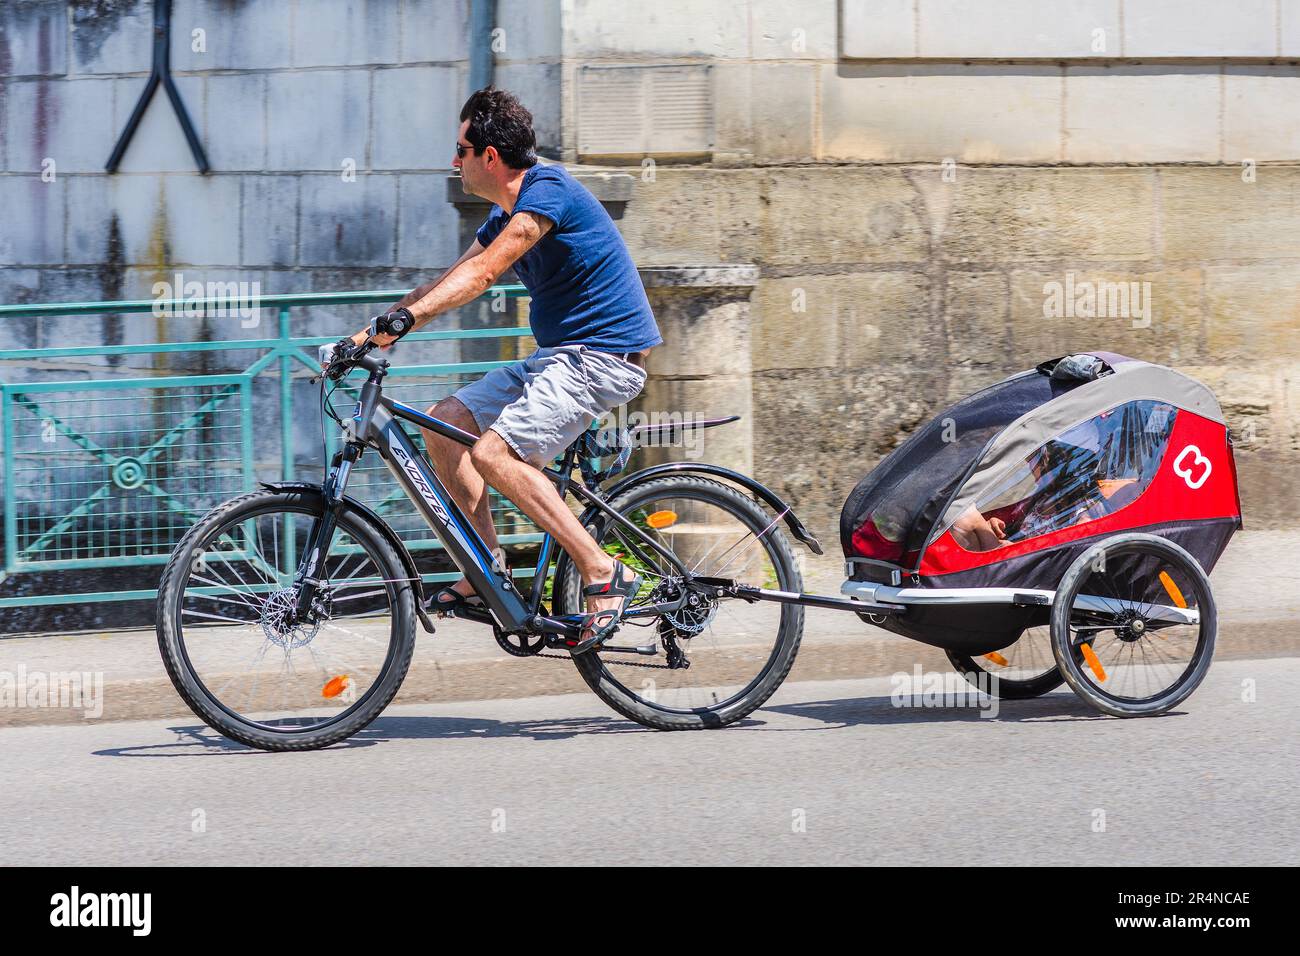 Homme sur E-Vortex vélo électrique avec deux enfants en remorque - Loches, Indre-et-Loire (37), France. Banque D'Images